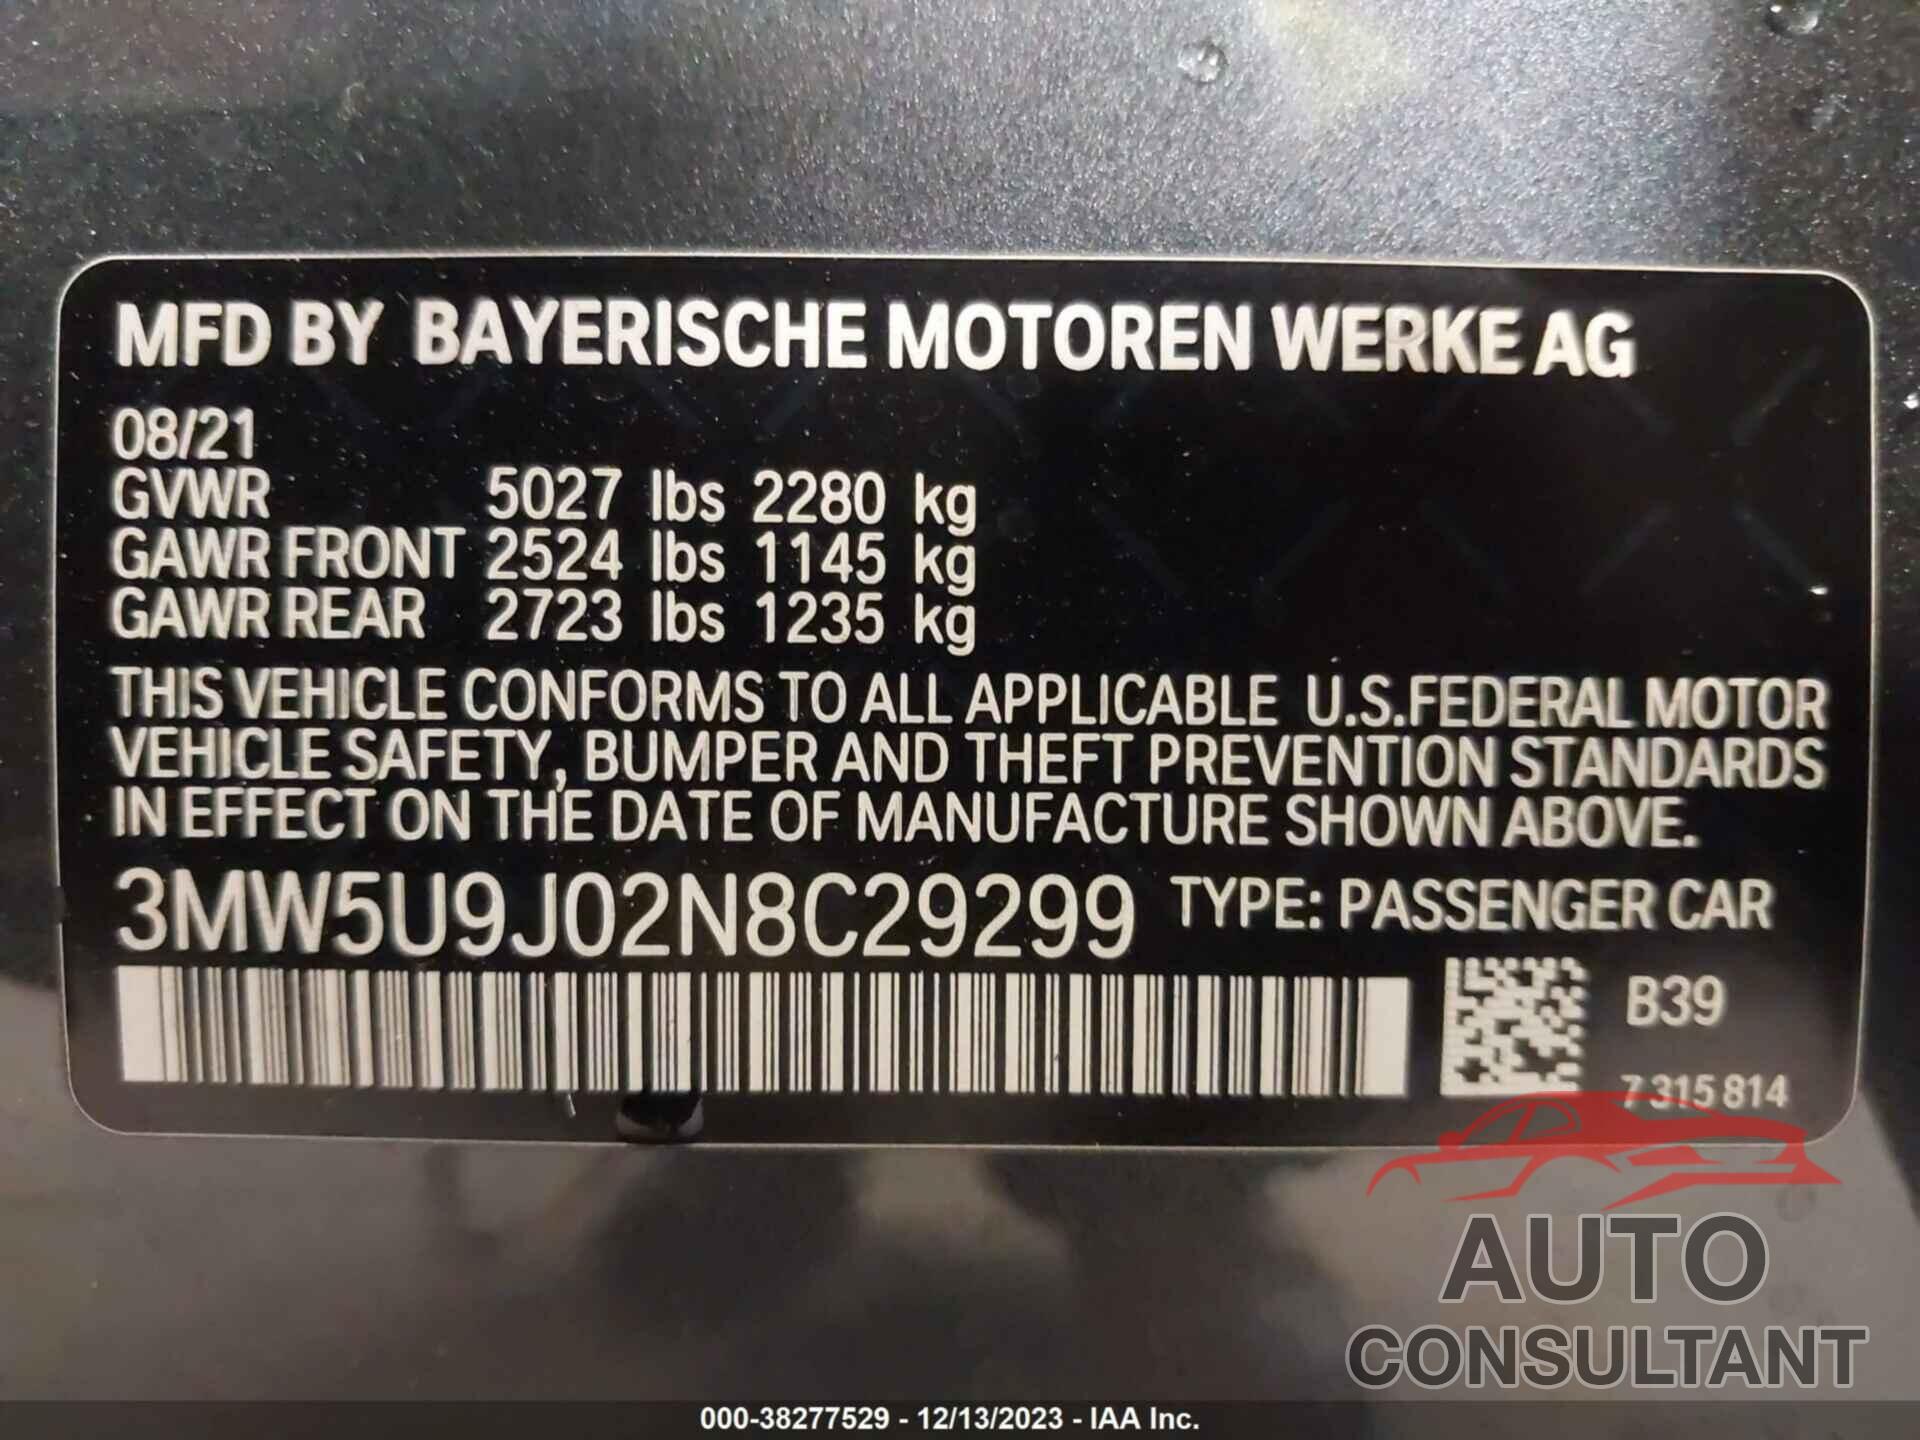 BMW 3 SERIES 2022 - 3MW5U9J02N8C29299